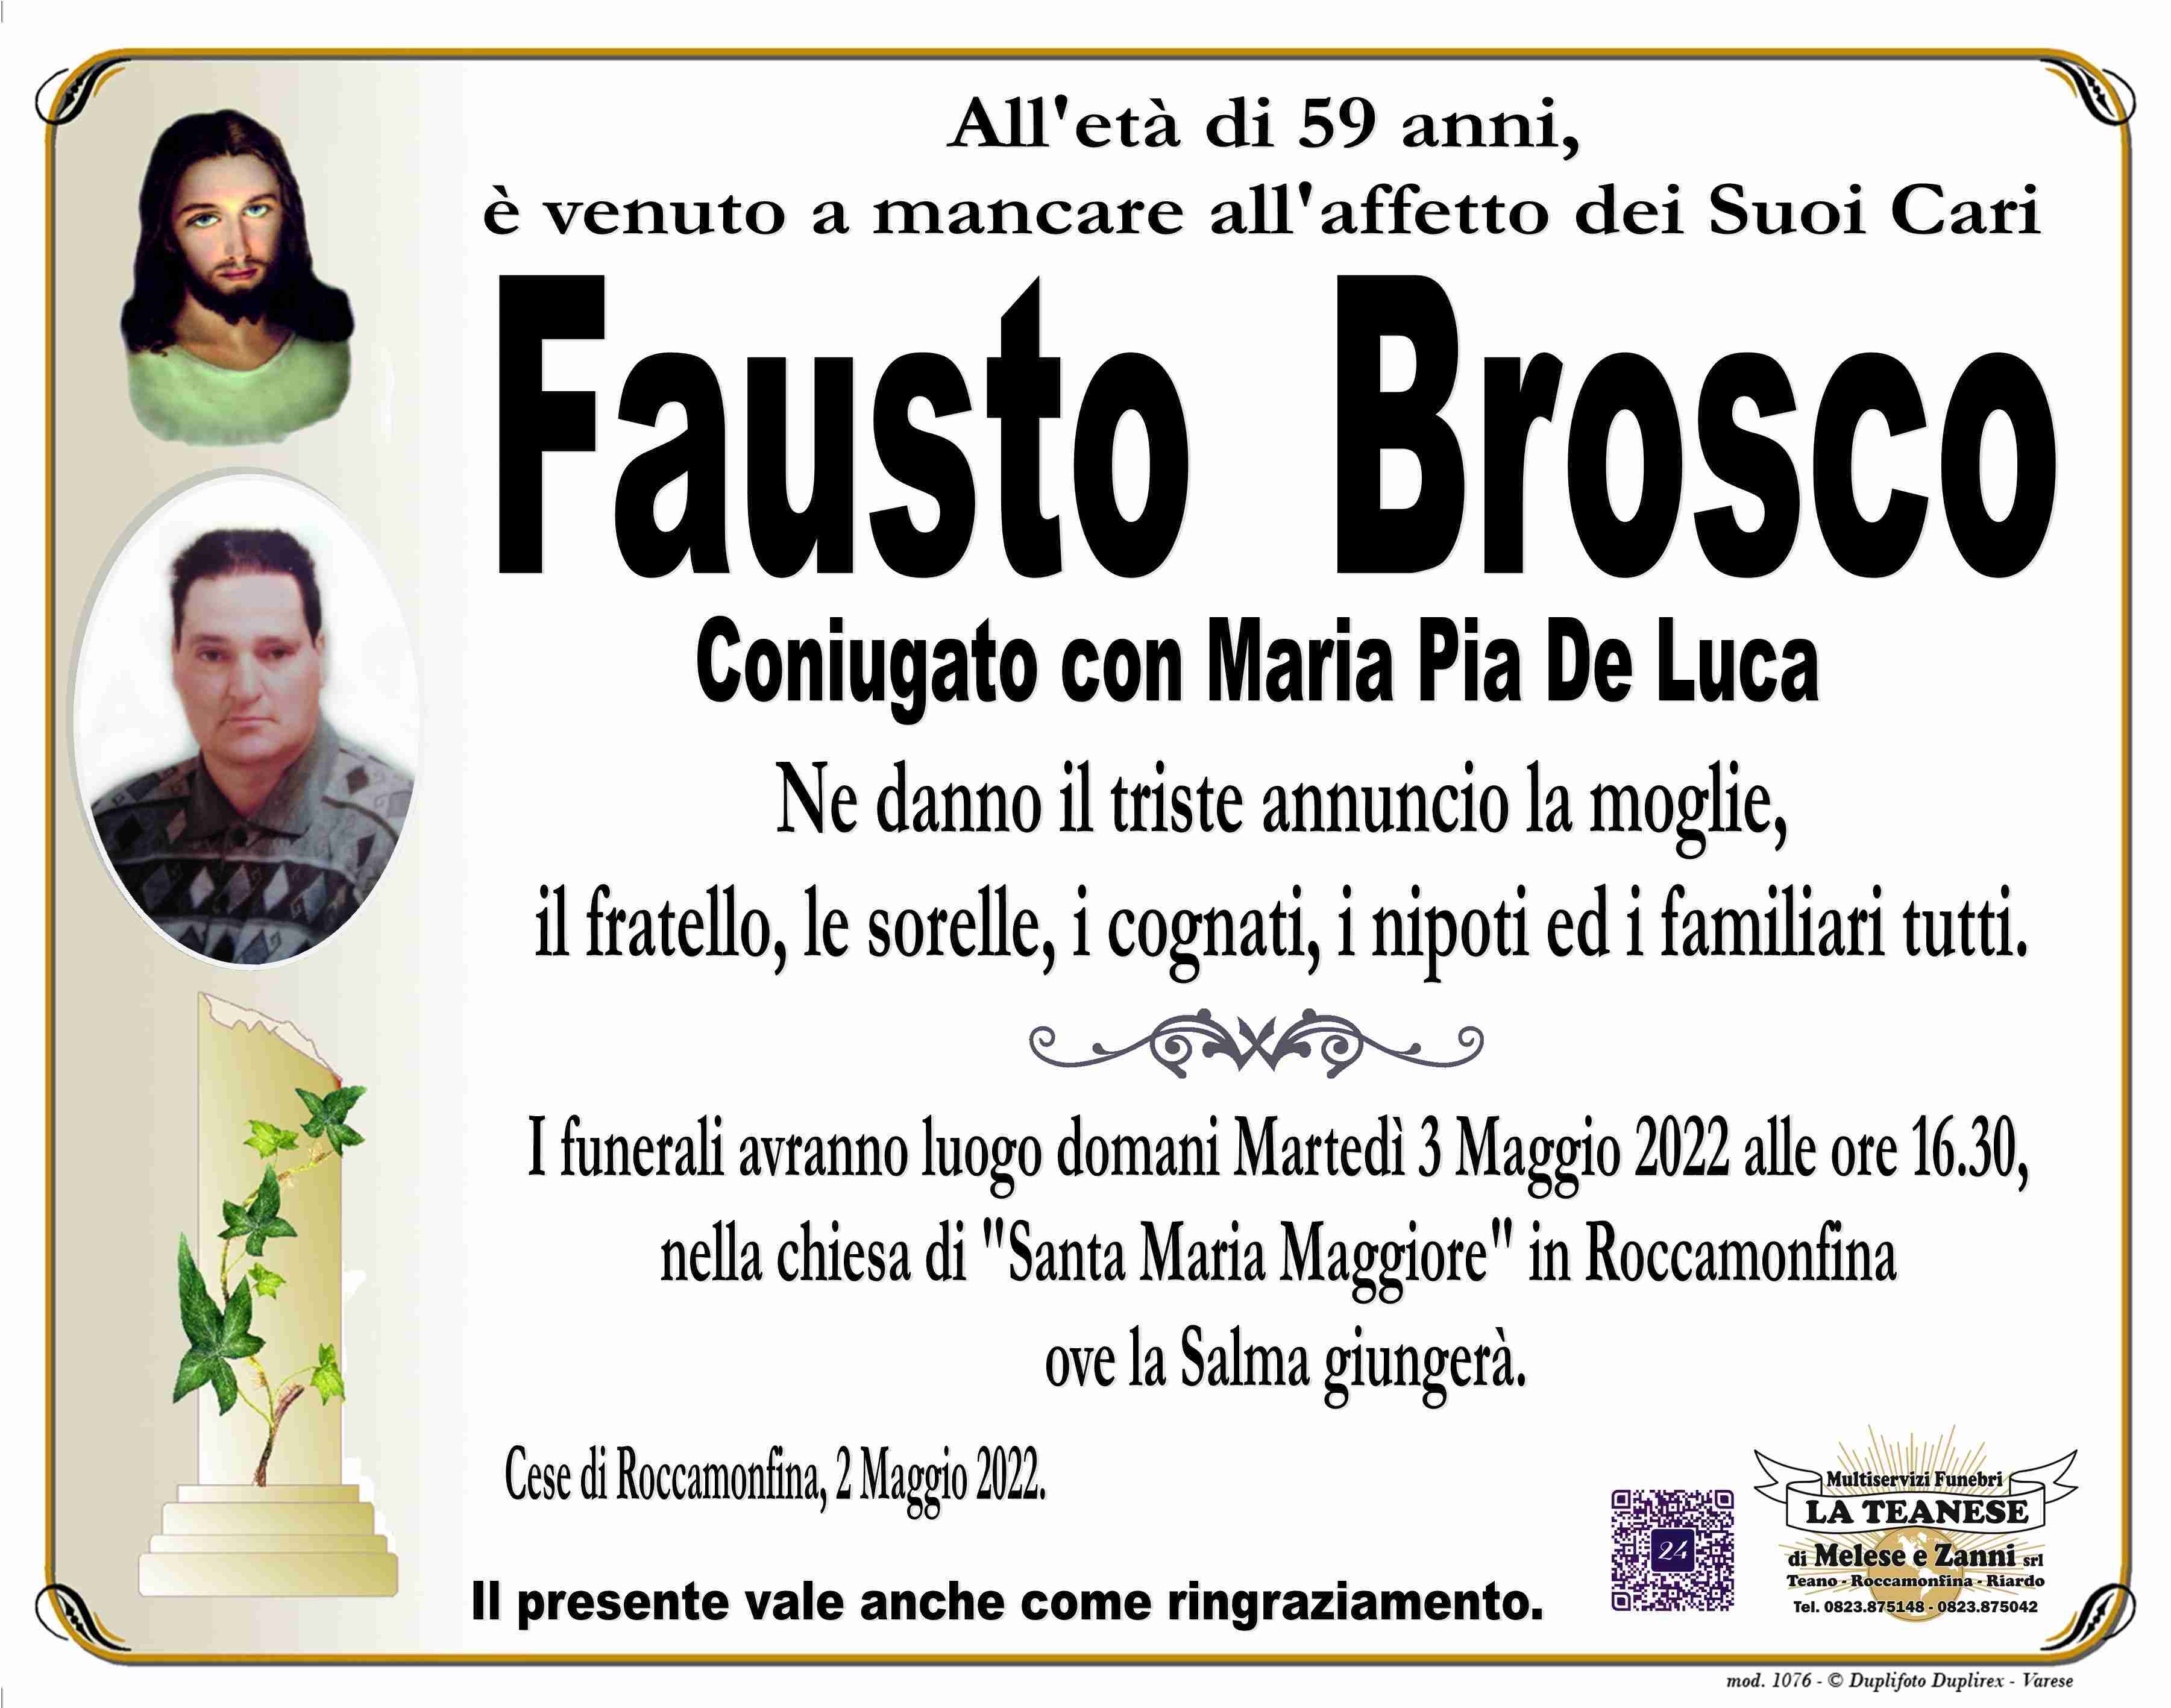 Fausto Brosco